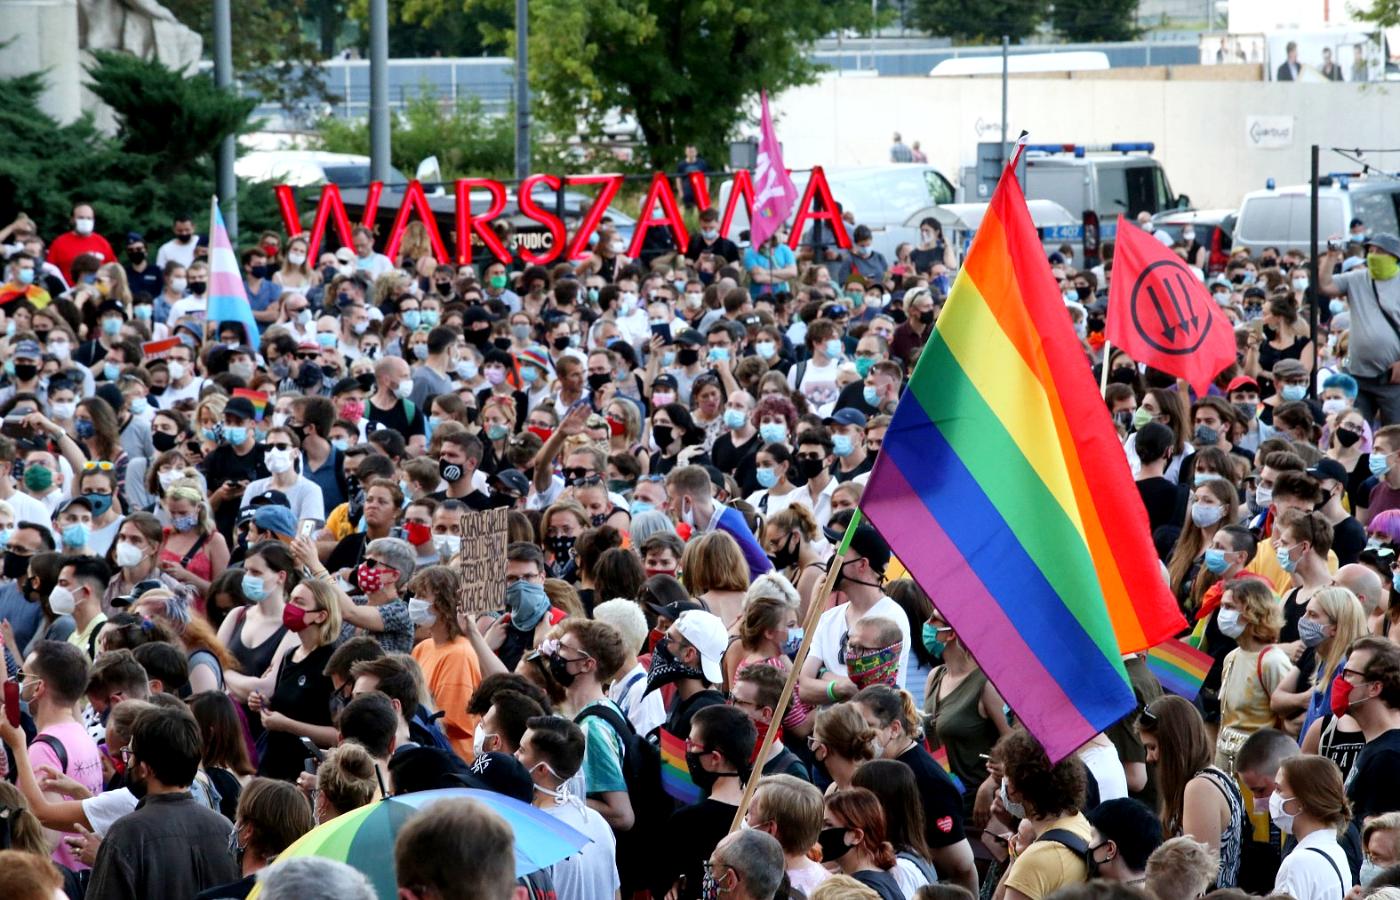 Plac Defilad w Warszawie. Protest przeciwko aresztowaniu aktywistki LGBT Margot